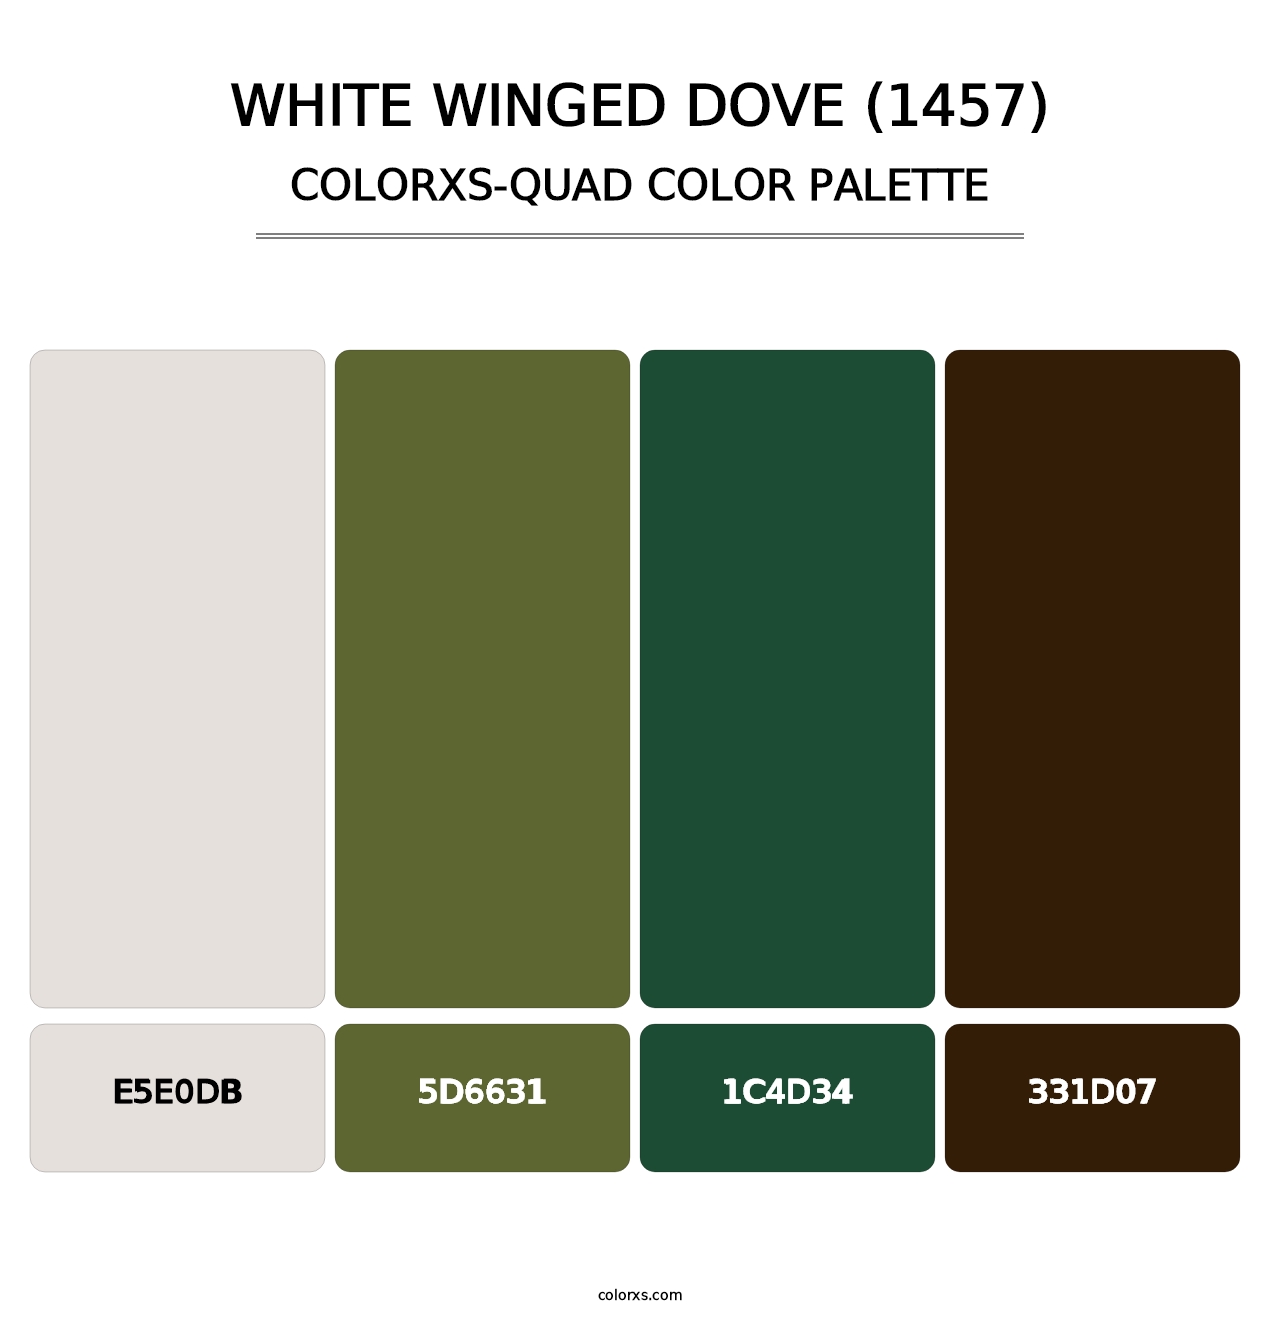 White Winged Dove (1457) - Colorxs Quad Palette